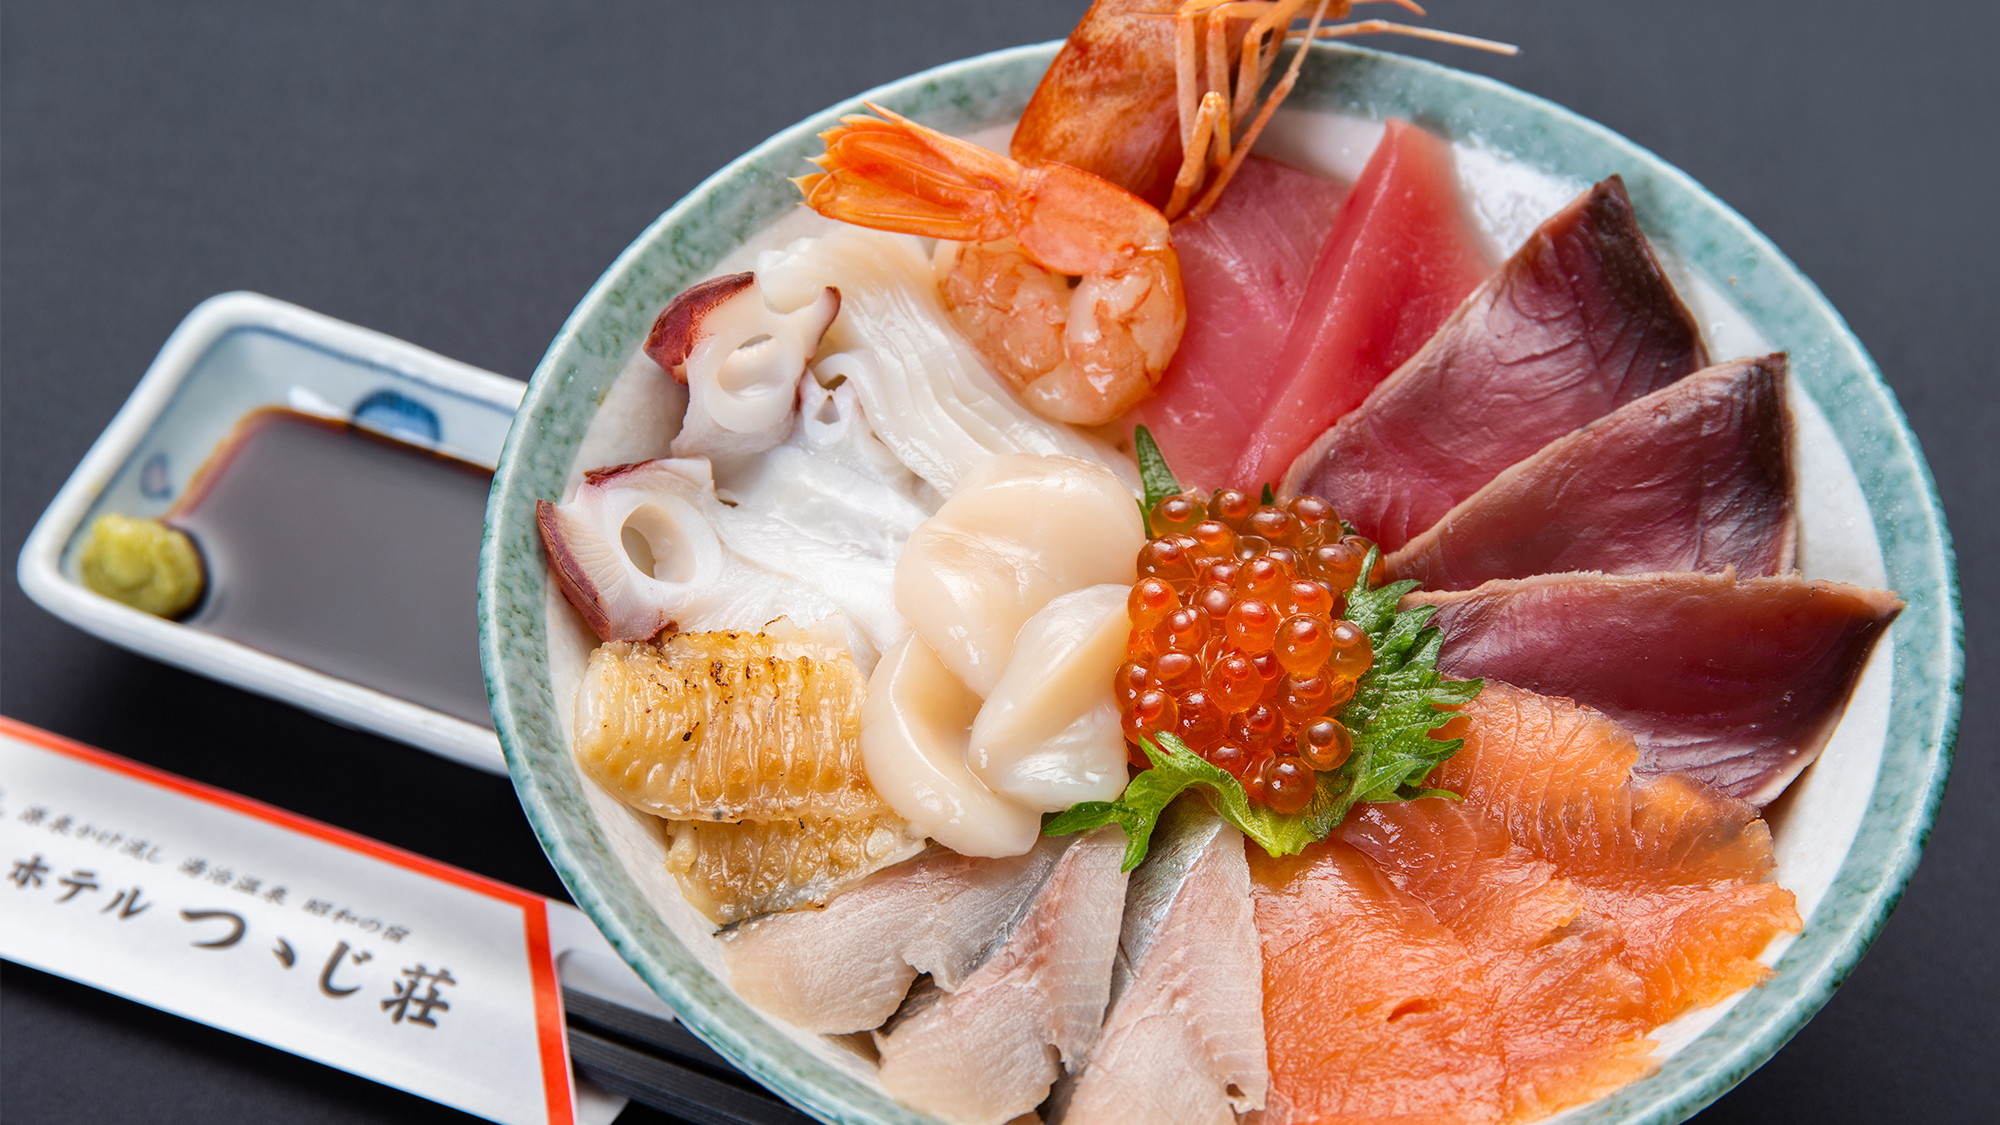 【選べる夕食一例】オホーツク海鮮丼：北海道ならではの新鮮でおいしい魚介類をふんだんに使用しています